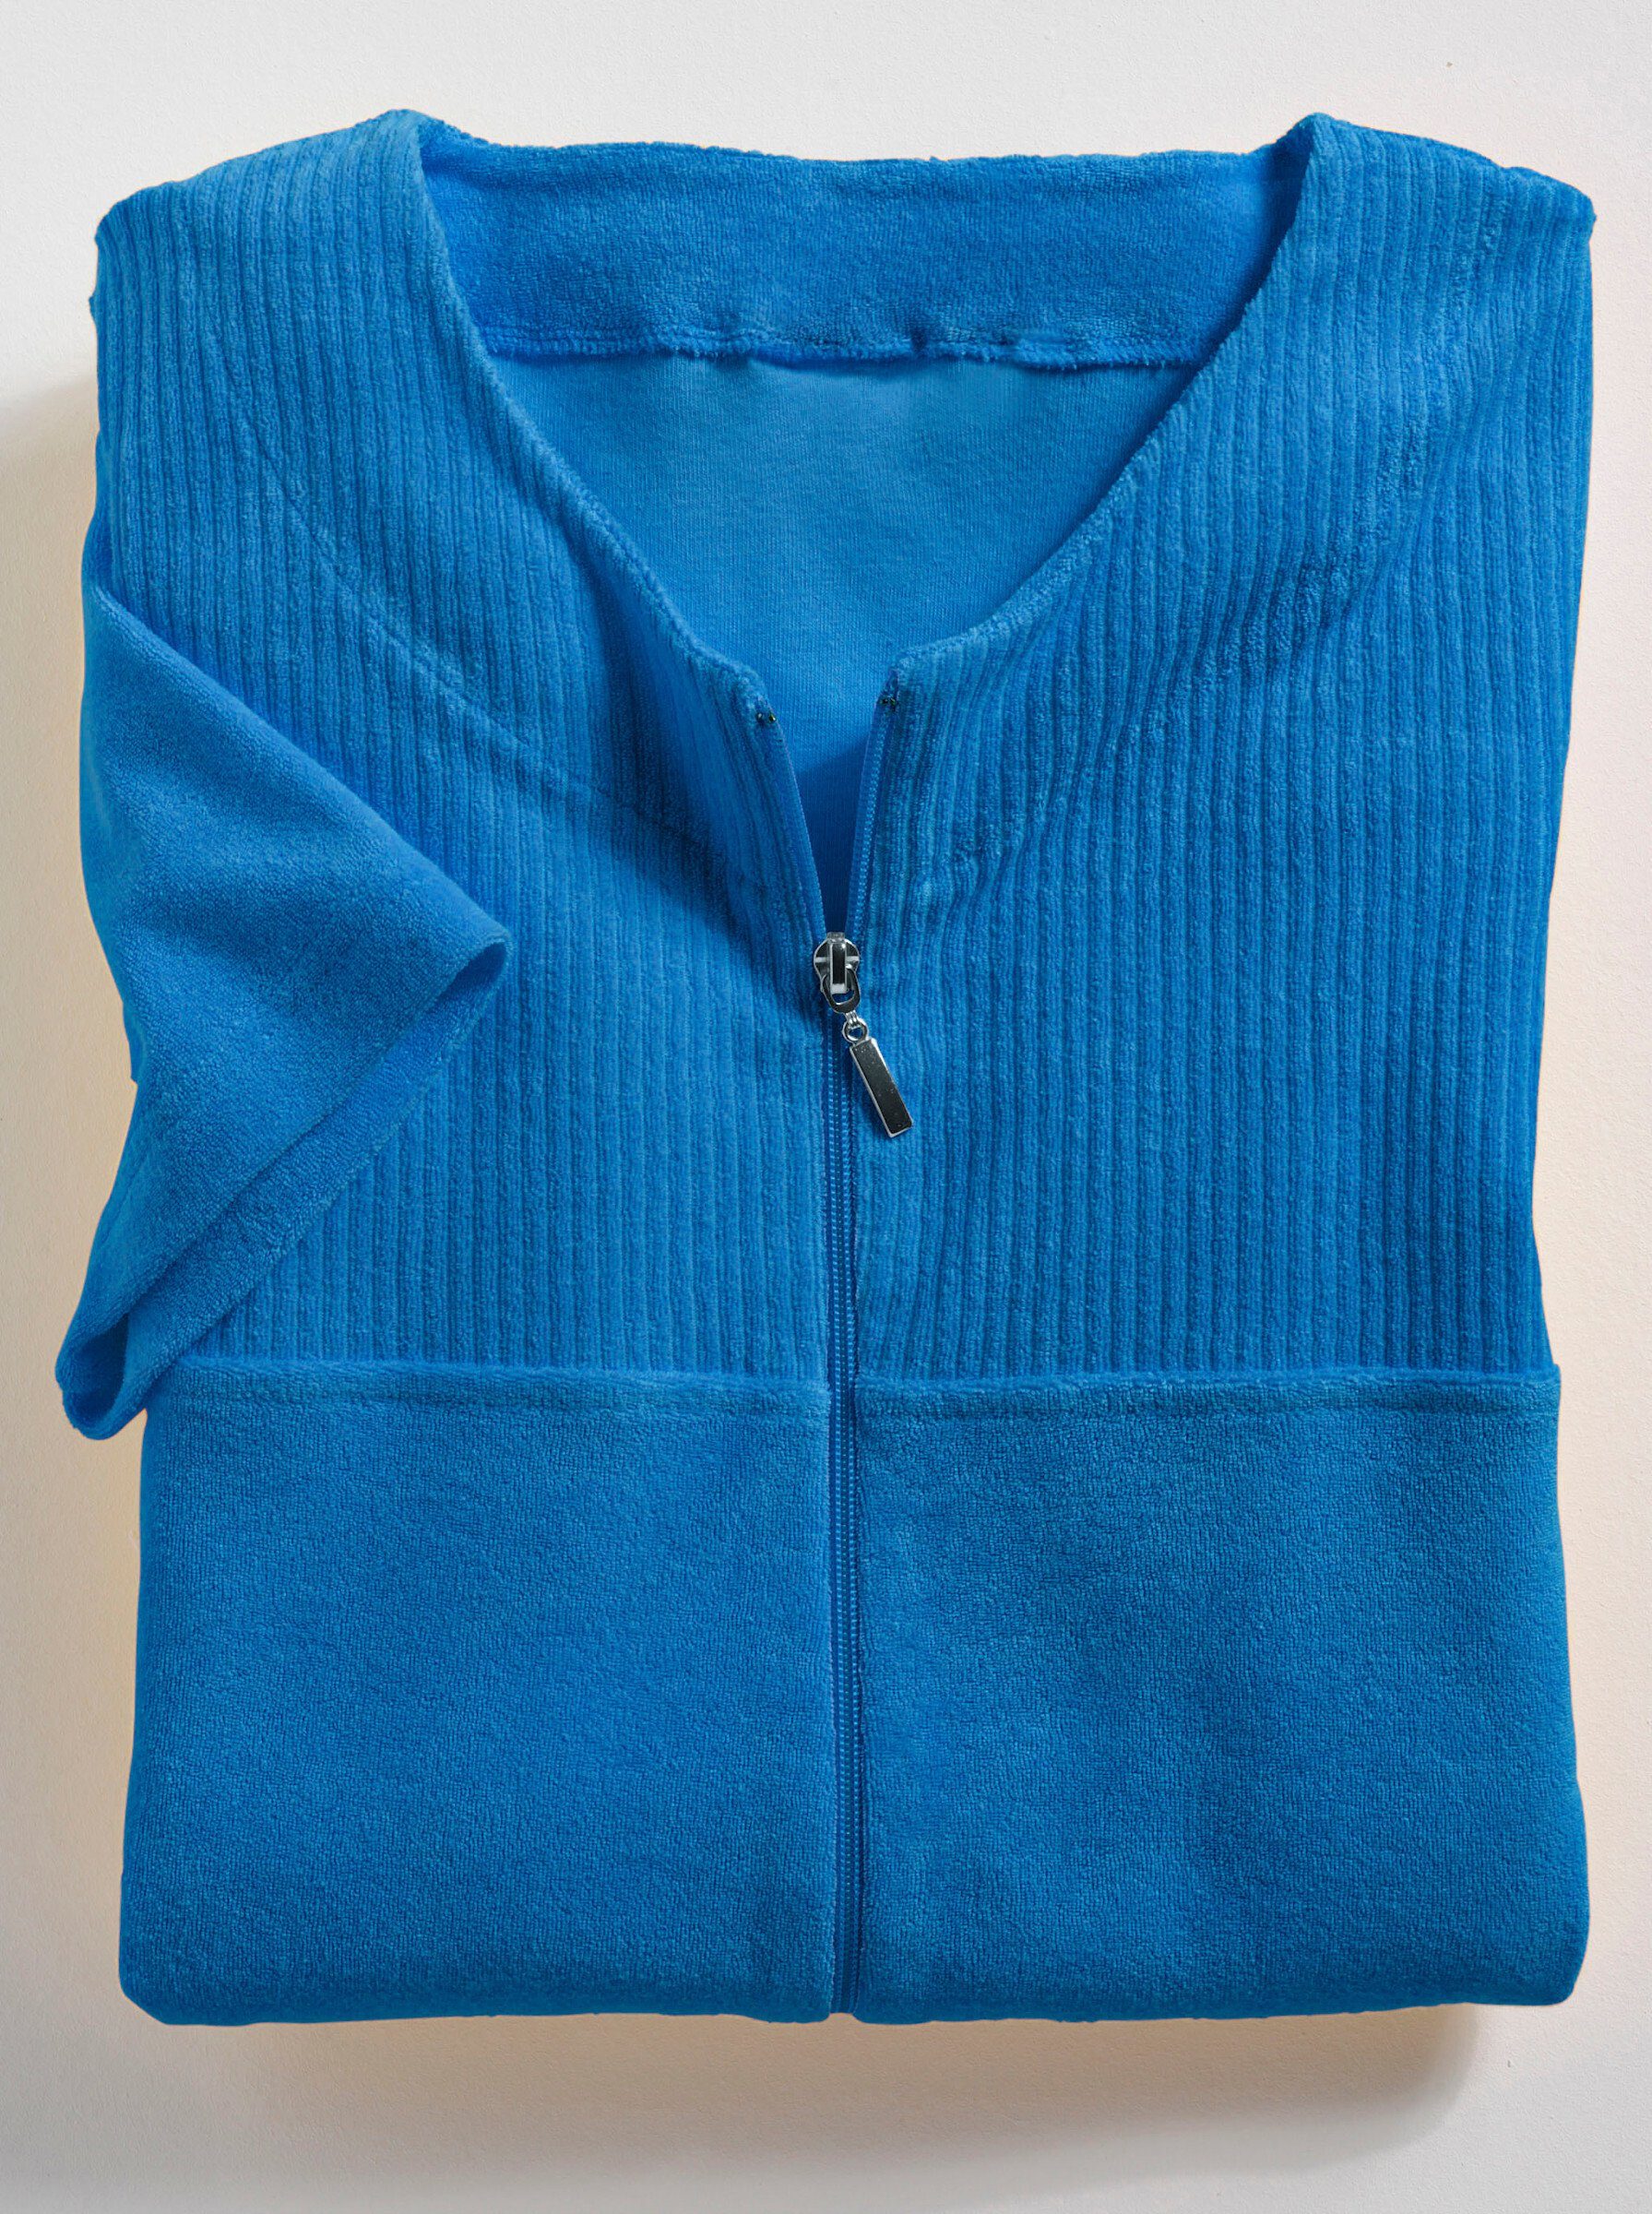 Reißverschluss Baumwolle, Länge Damenbademantel, Wewo 100 cm, ca. fashion blau